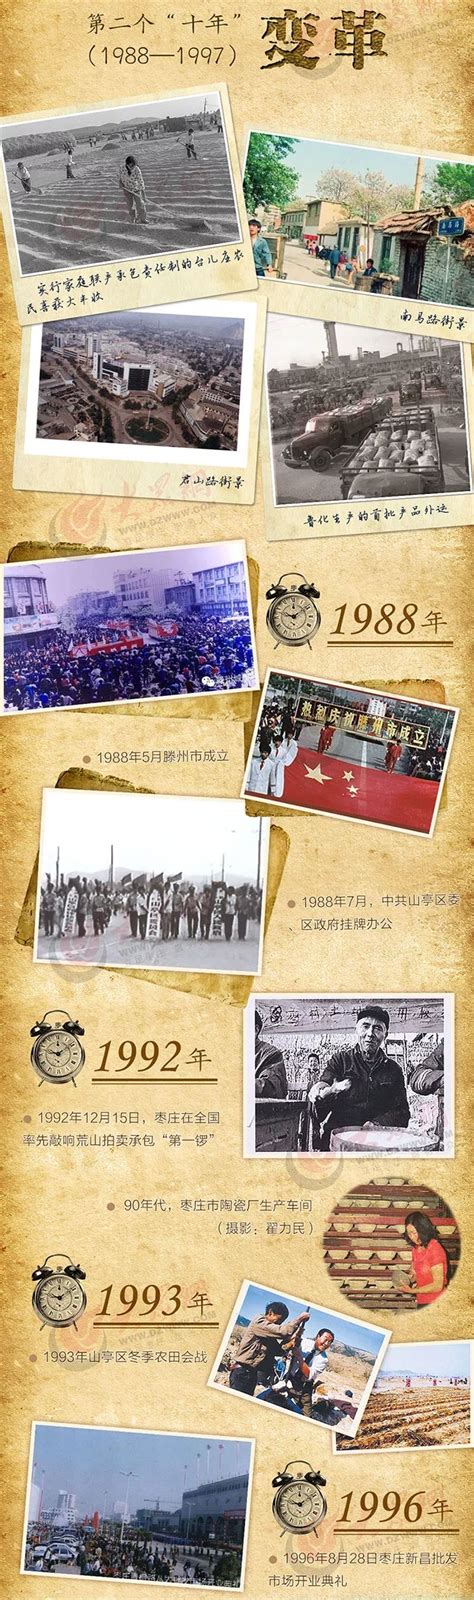 改革开放40年中的“枣庄身影”_山东频道_凤凰网